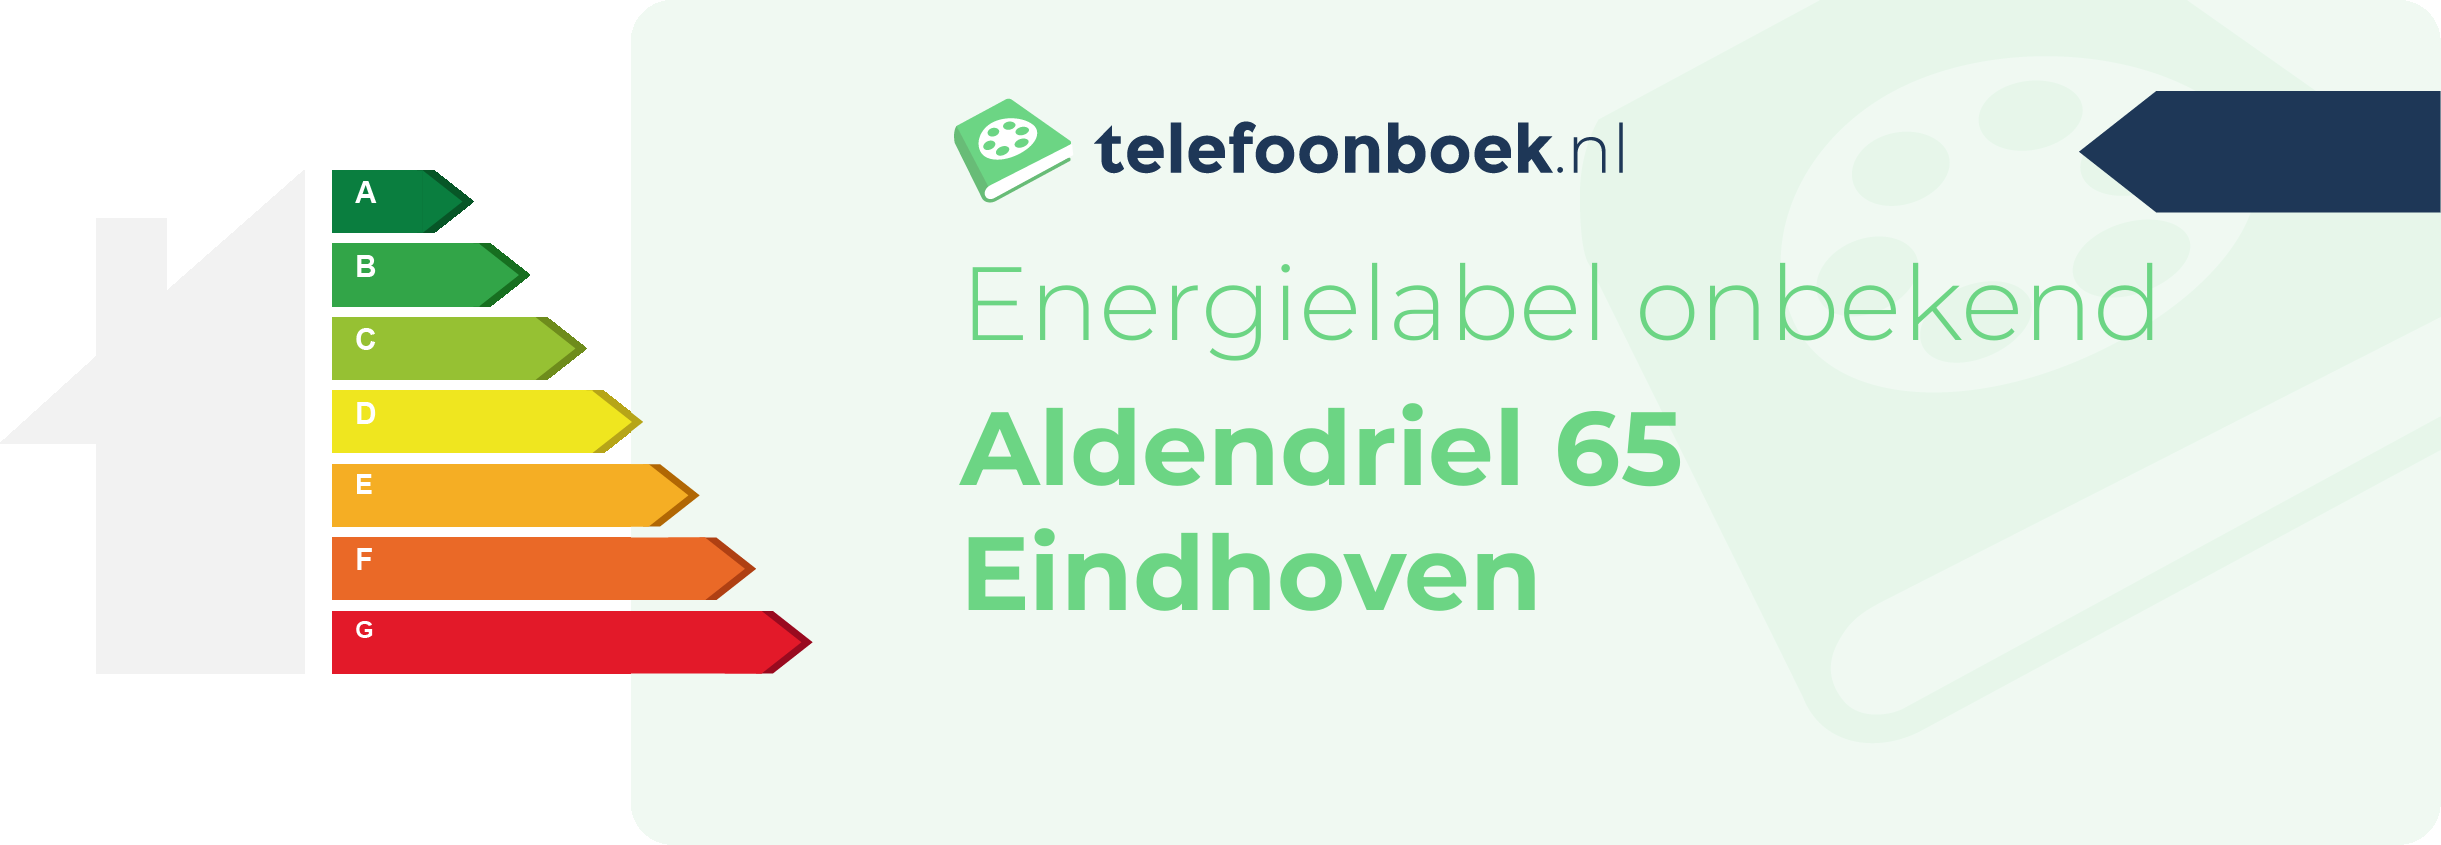 Energielabel Aldendriel 65 Eindhoven